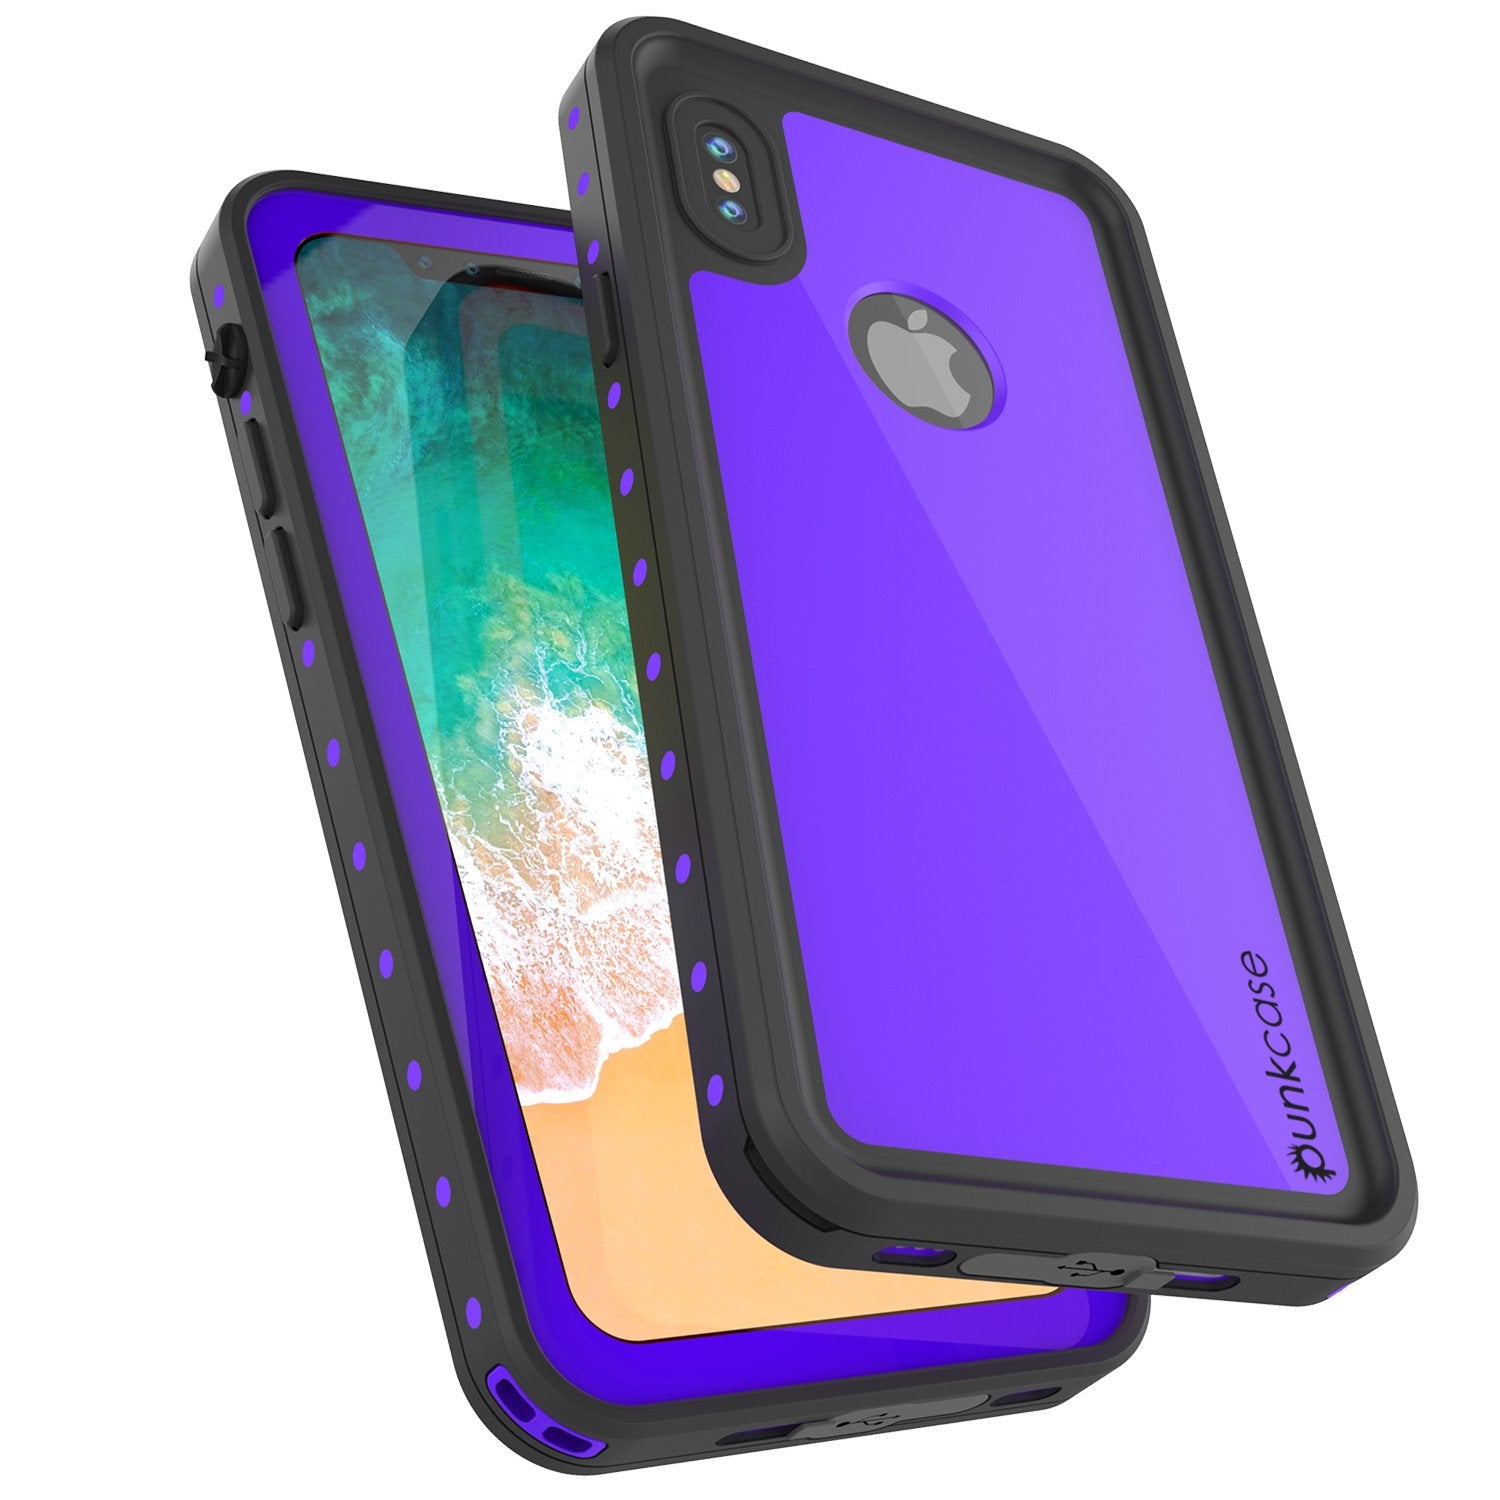 iPhone X Waterproof IP68 Case, Punkcase [Purple] [StudStar Series] [Slim Fit] [Dirtproof]